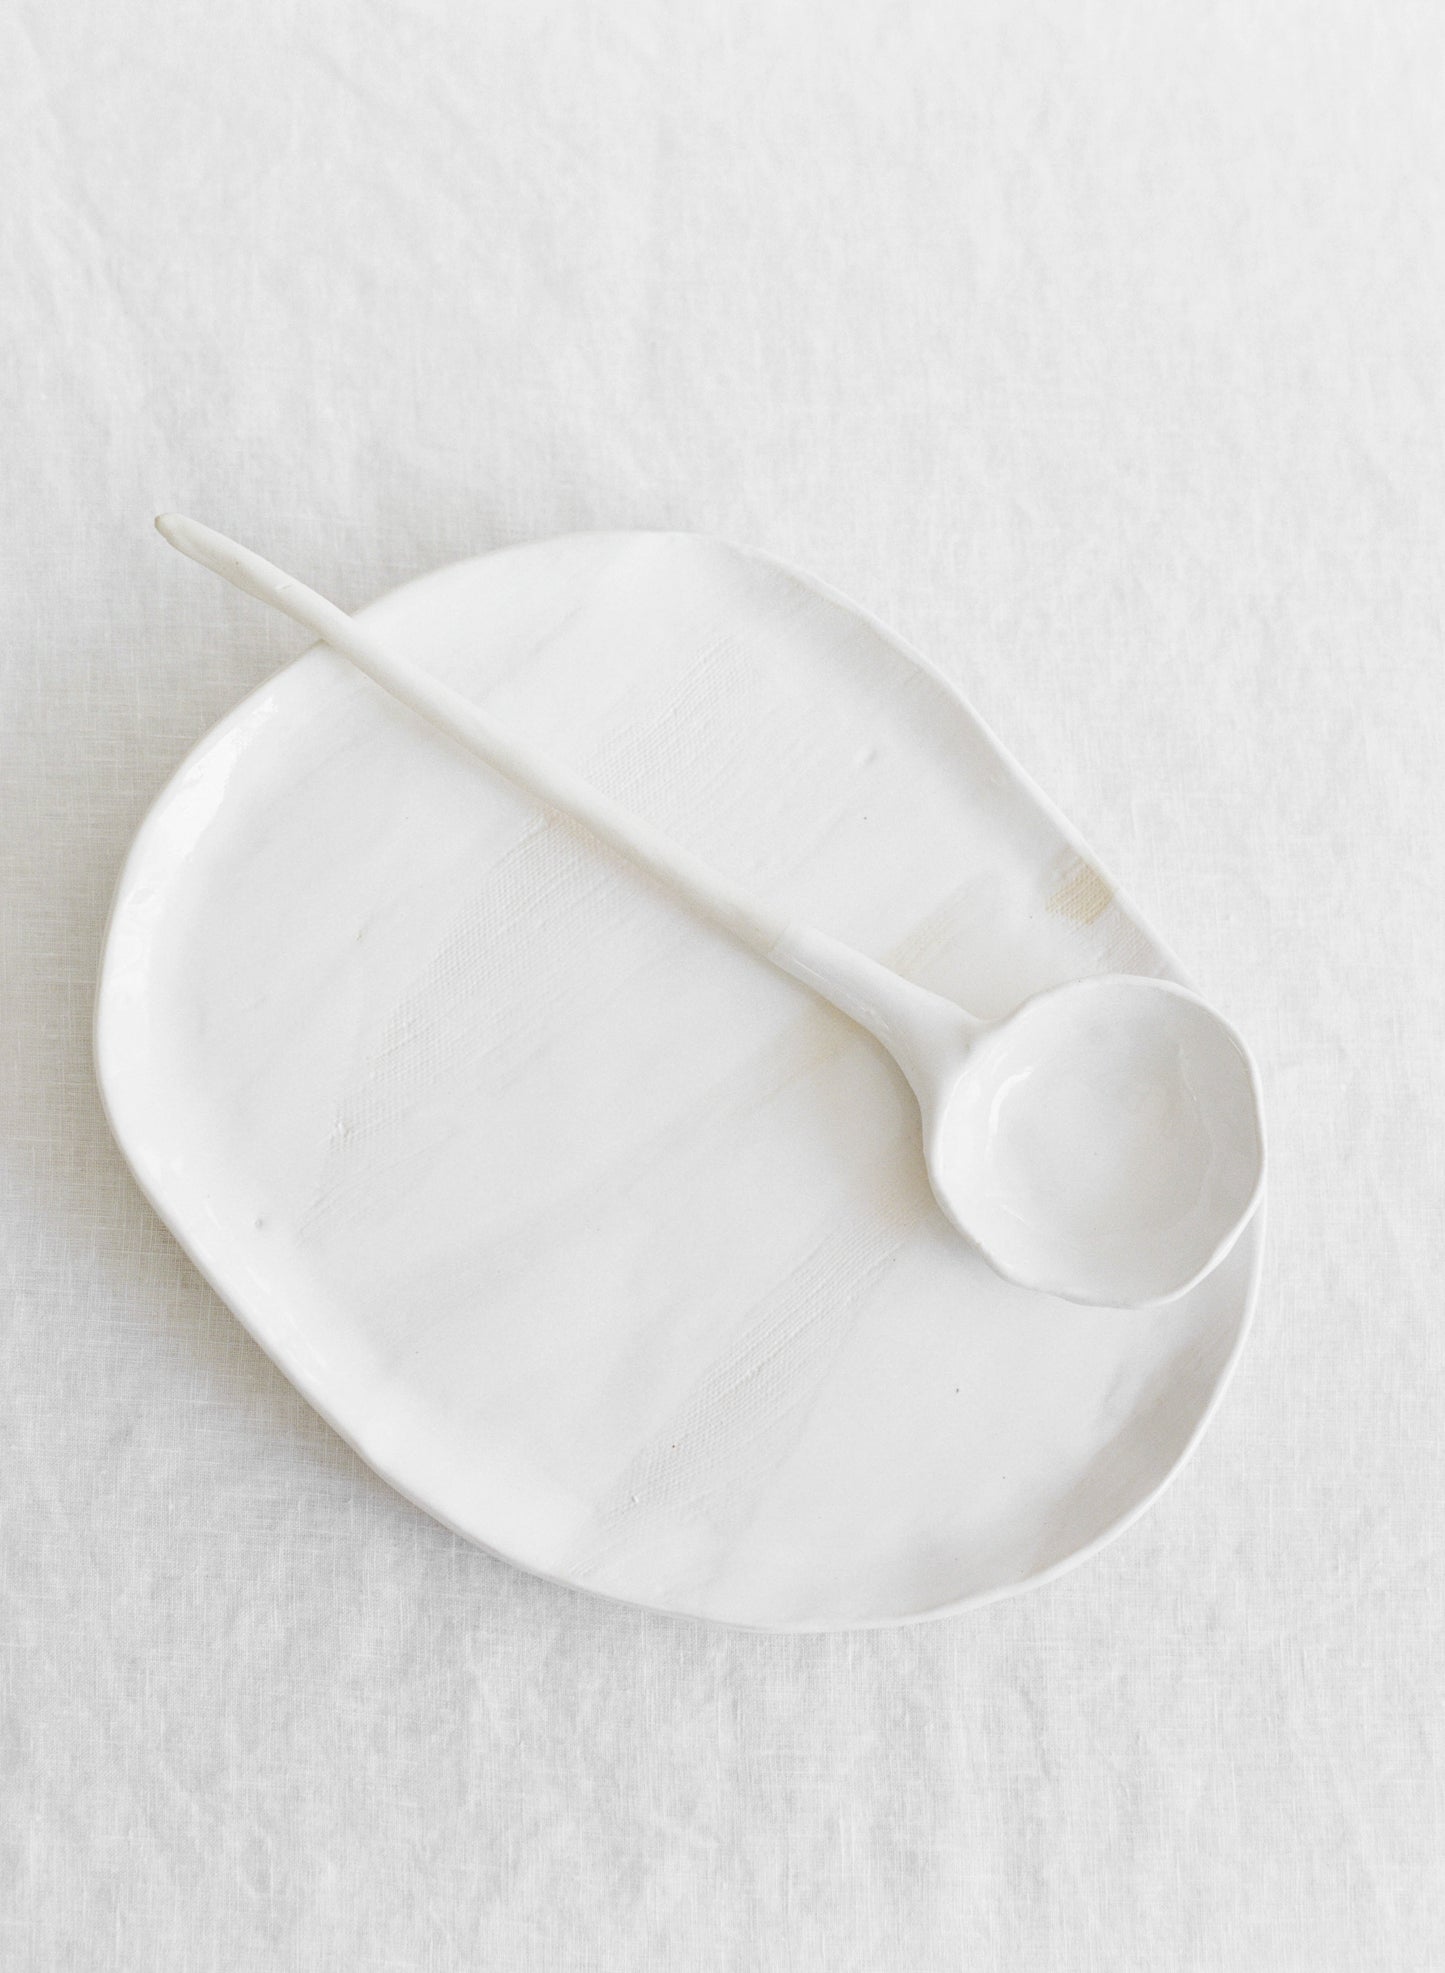 Ceramic Serving Spoons